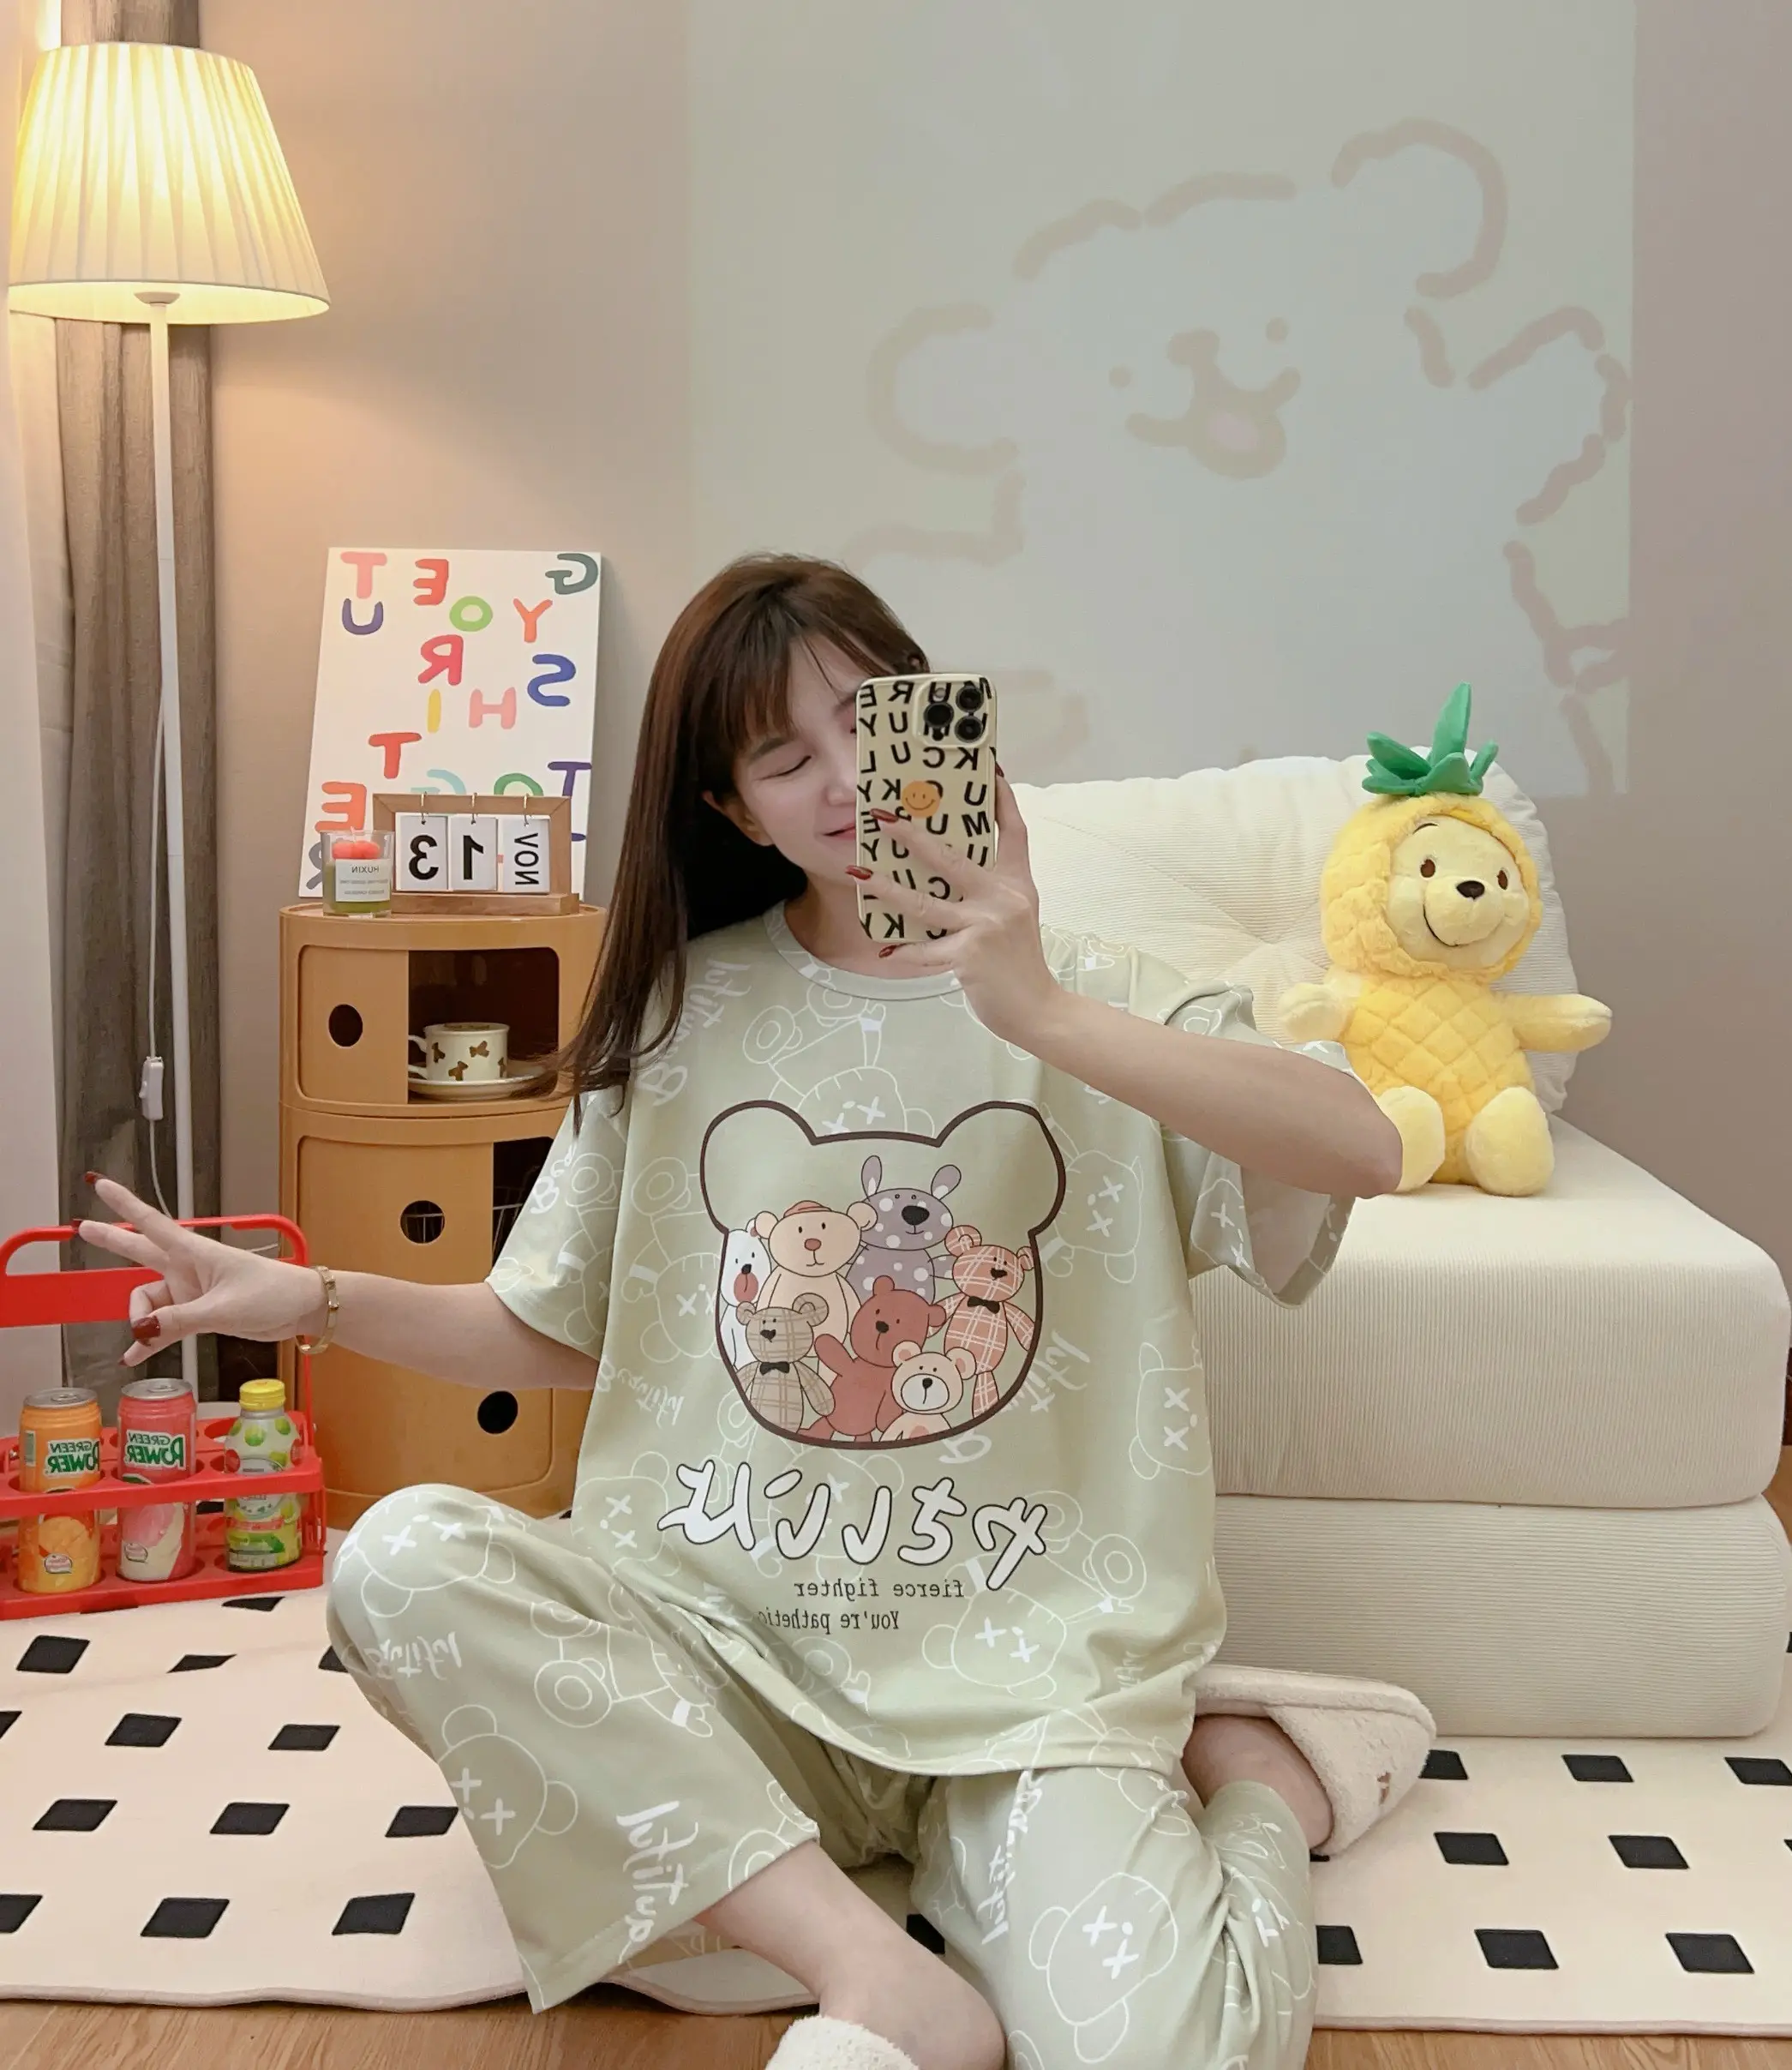 High Quality Cartoon Pajamas Set Cute Printed Casual Wear Cotton Pyjamas 2 Pieces Women's Sleepwear